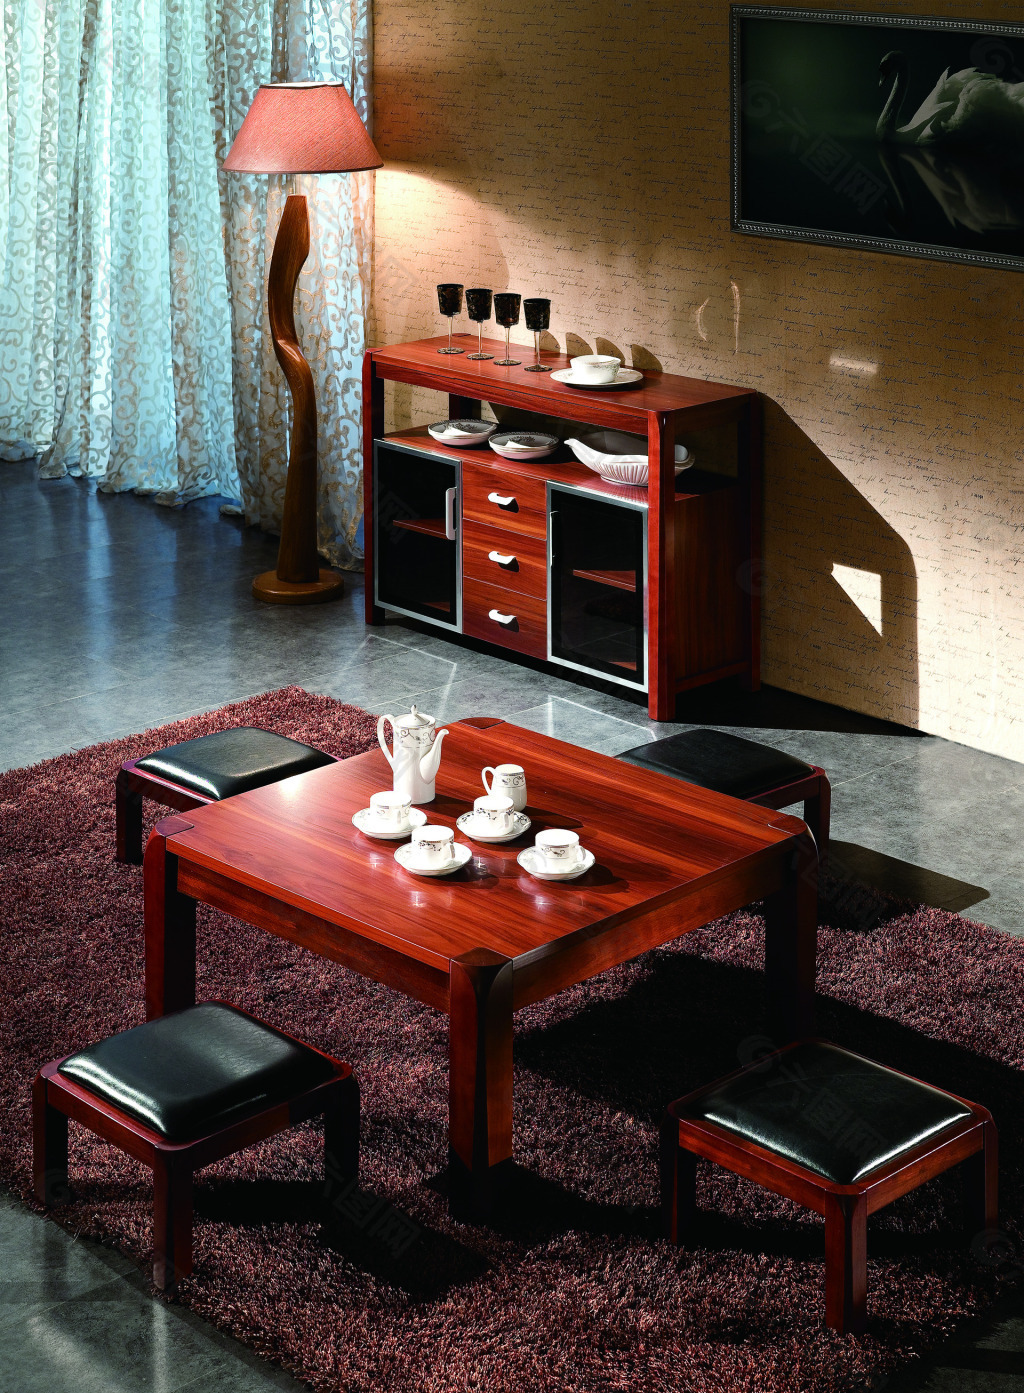 中式风格客厅木质茶几装修效果图- 中国风